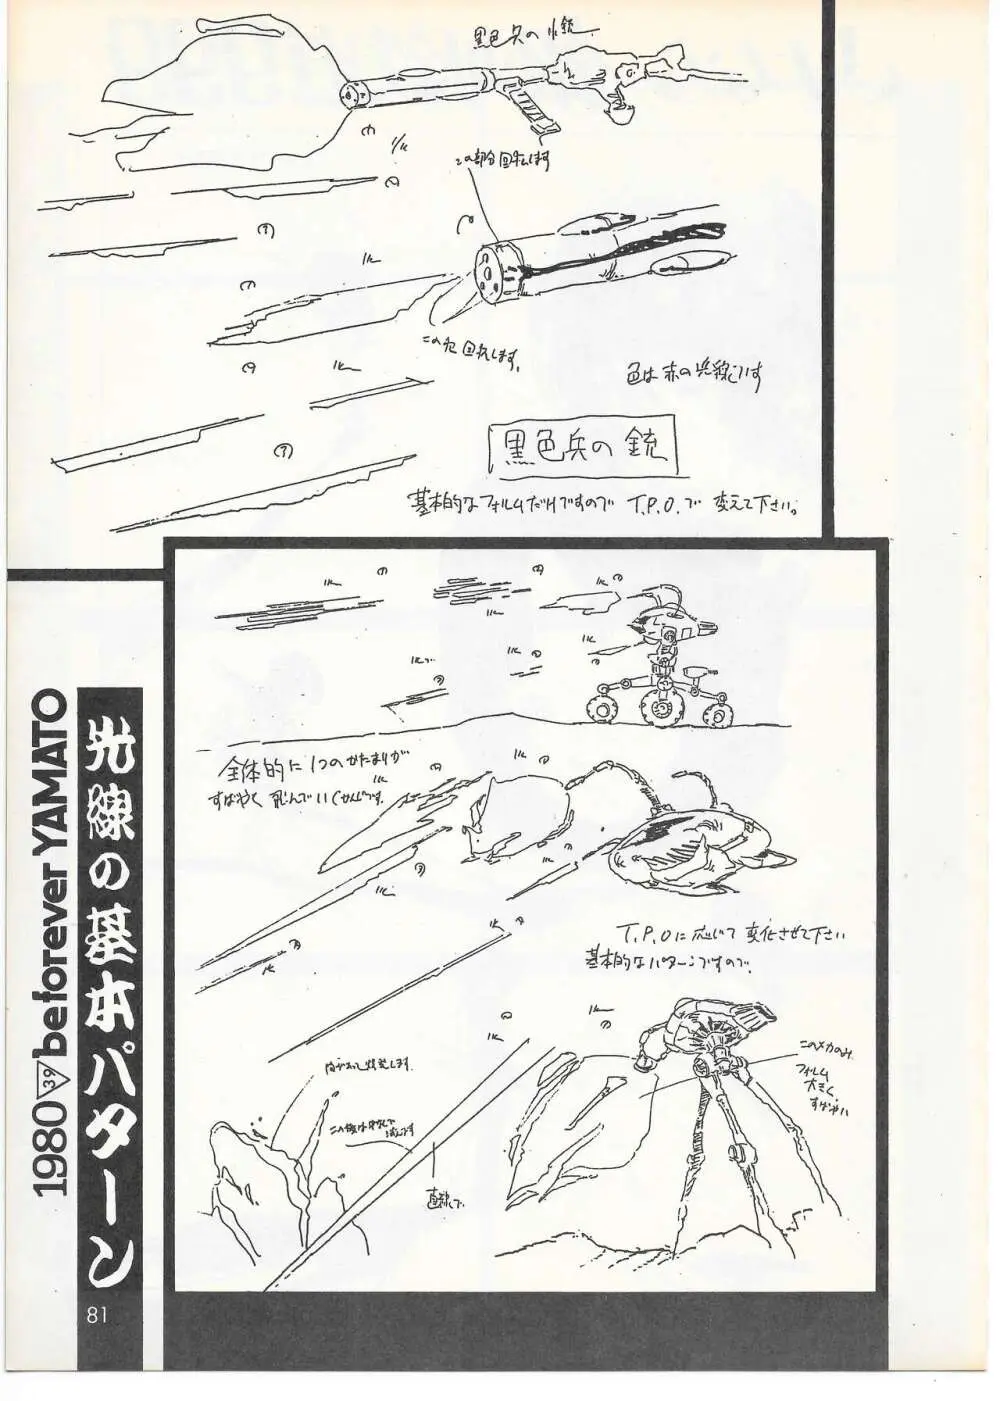 THE ANIMATOR 1 金田伊功特集号 78ページ